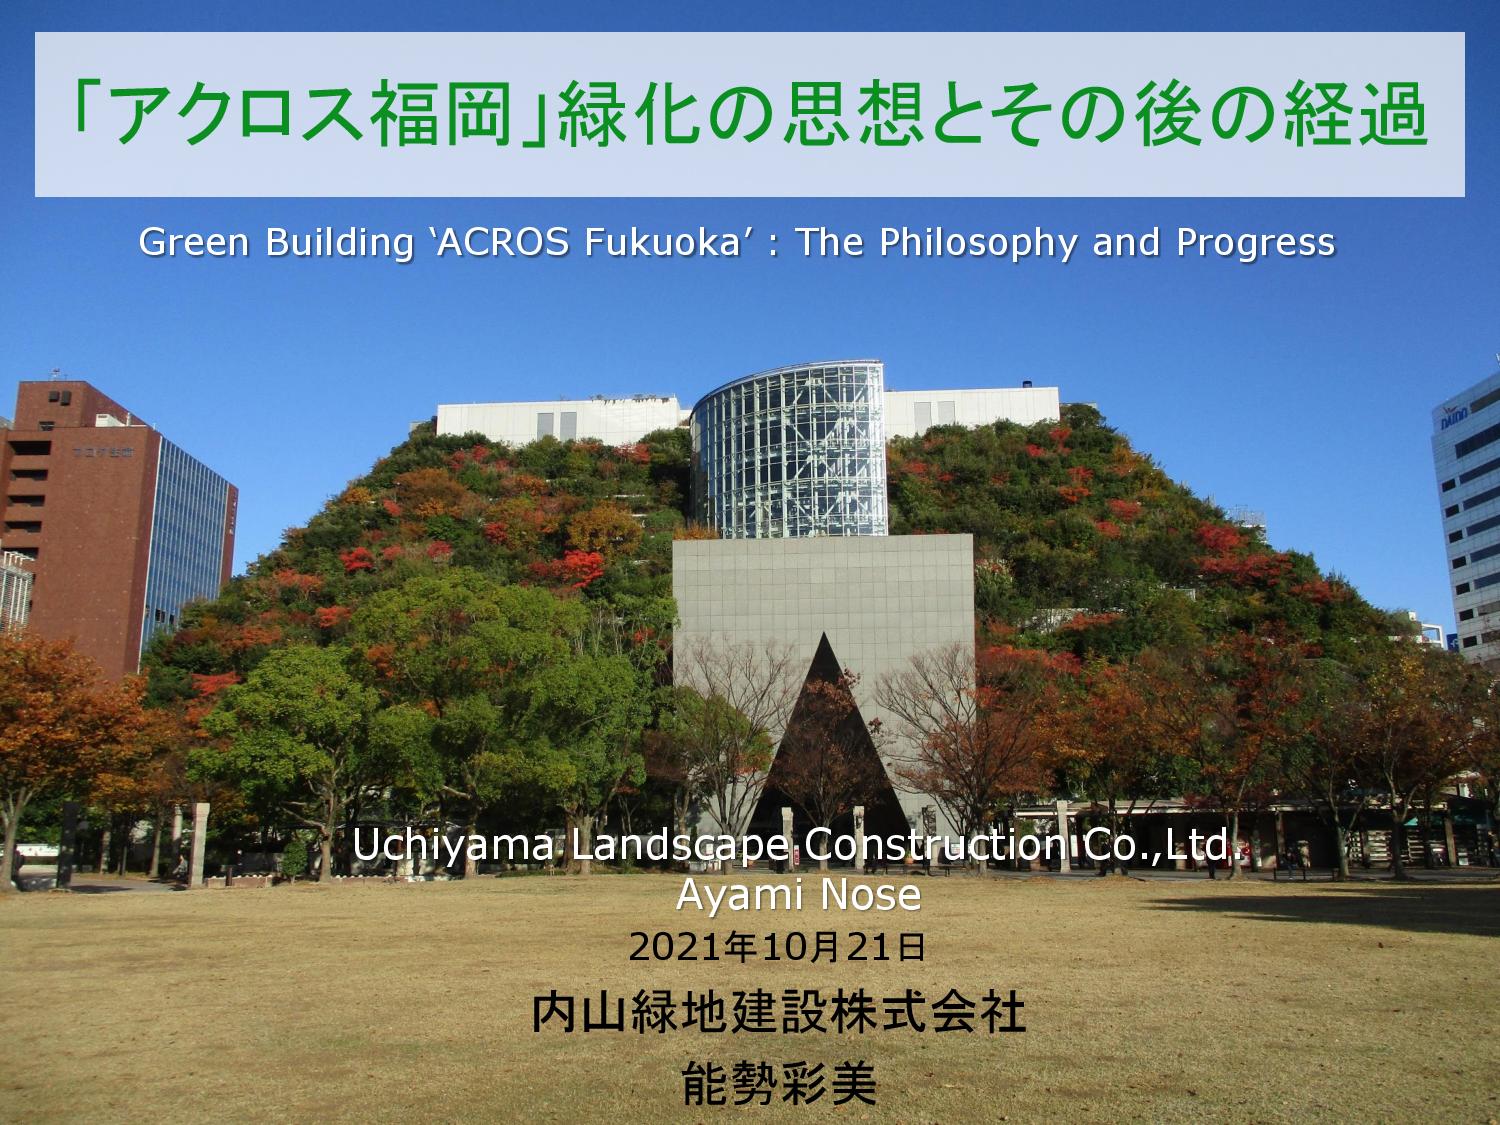 Uchiyama Landscape Construction